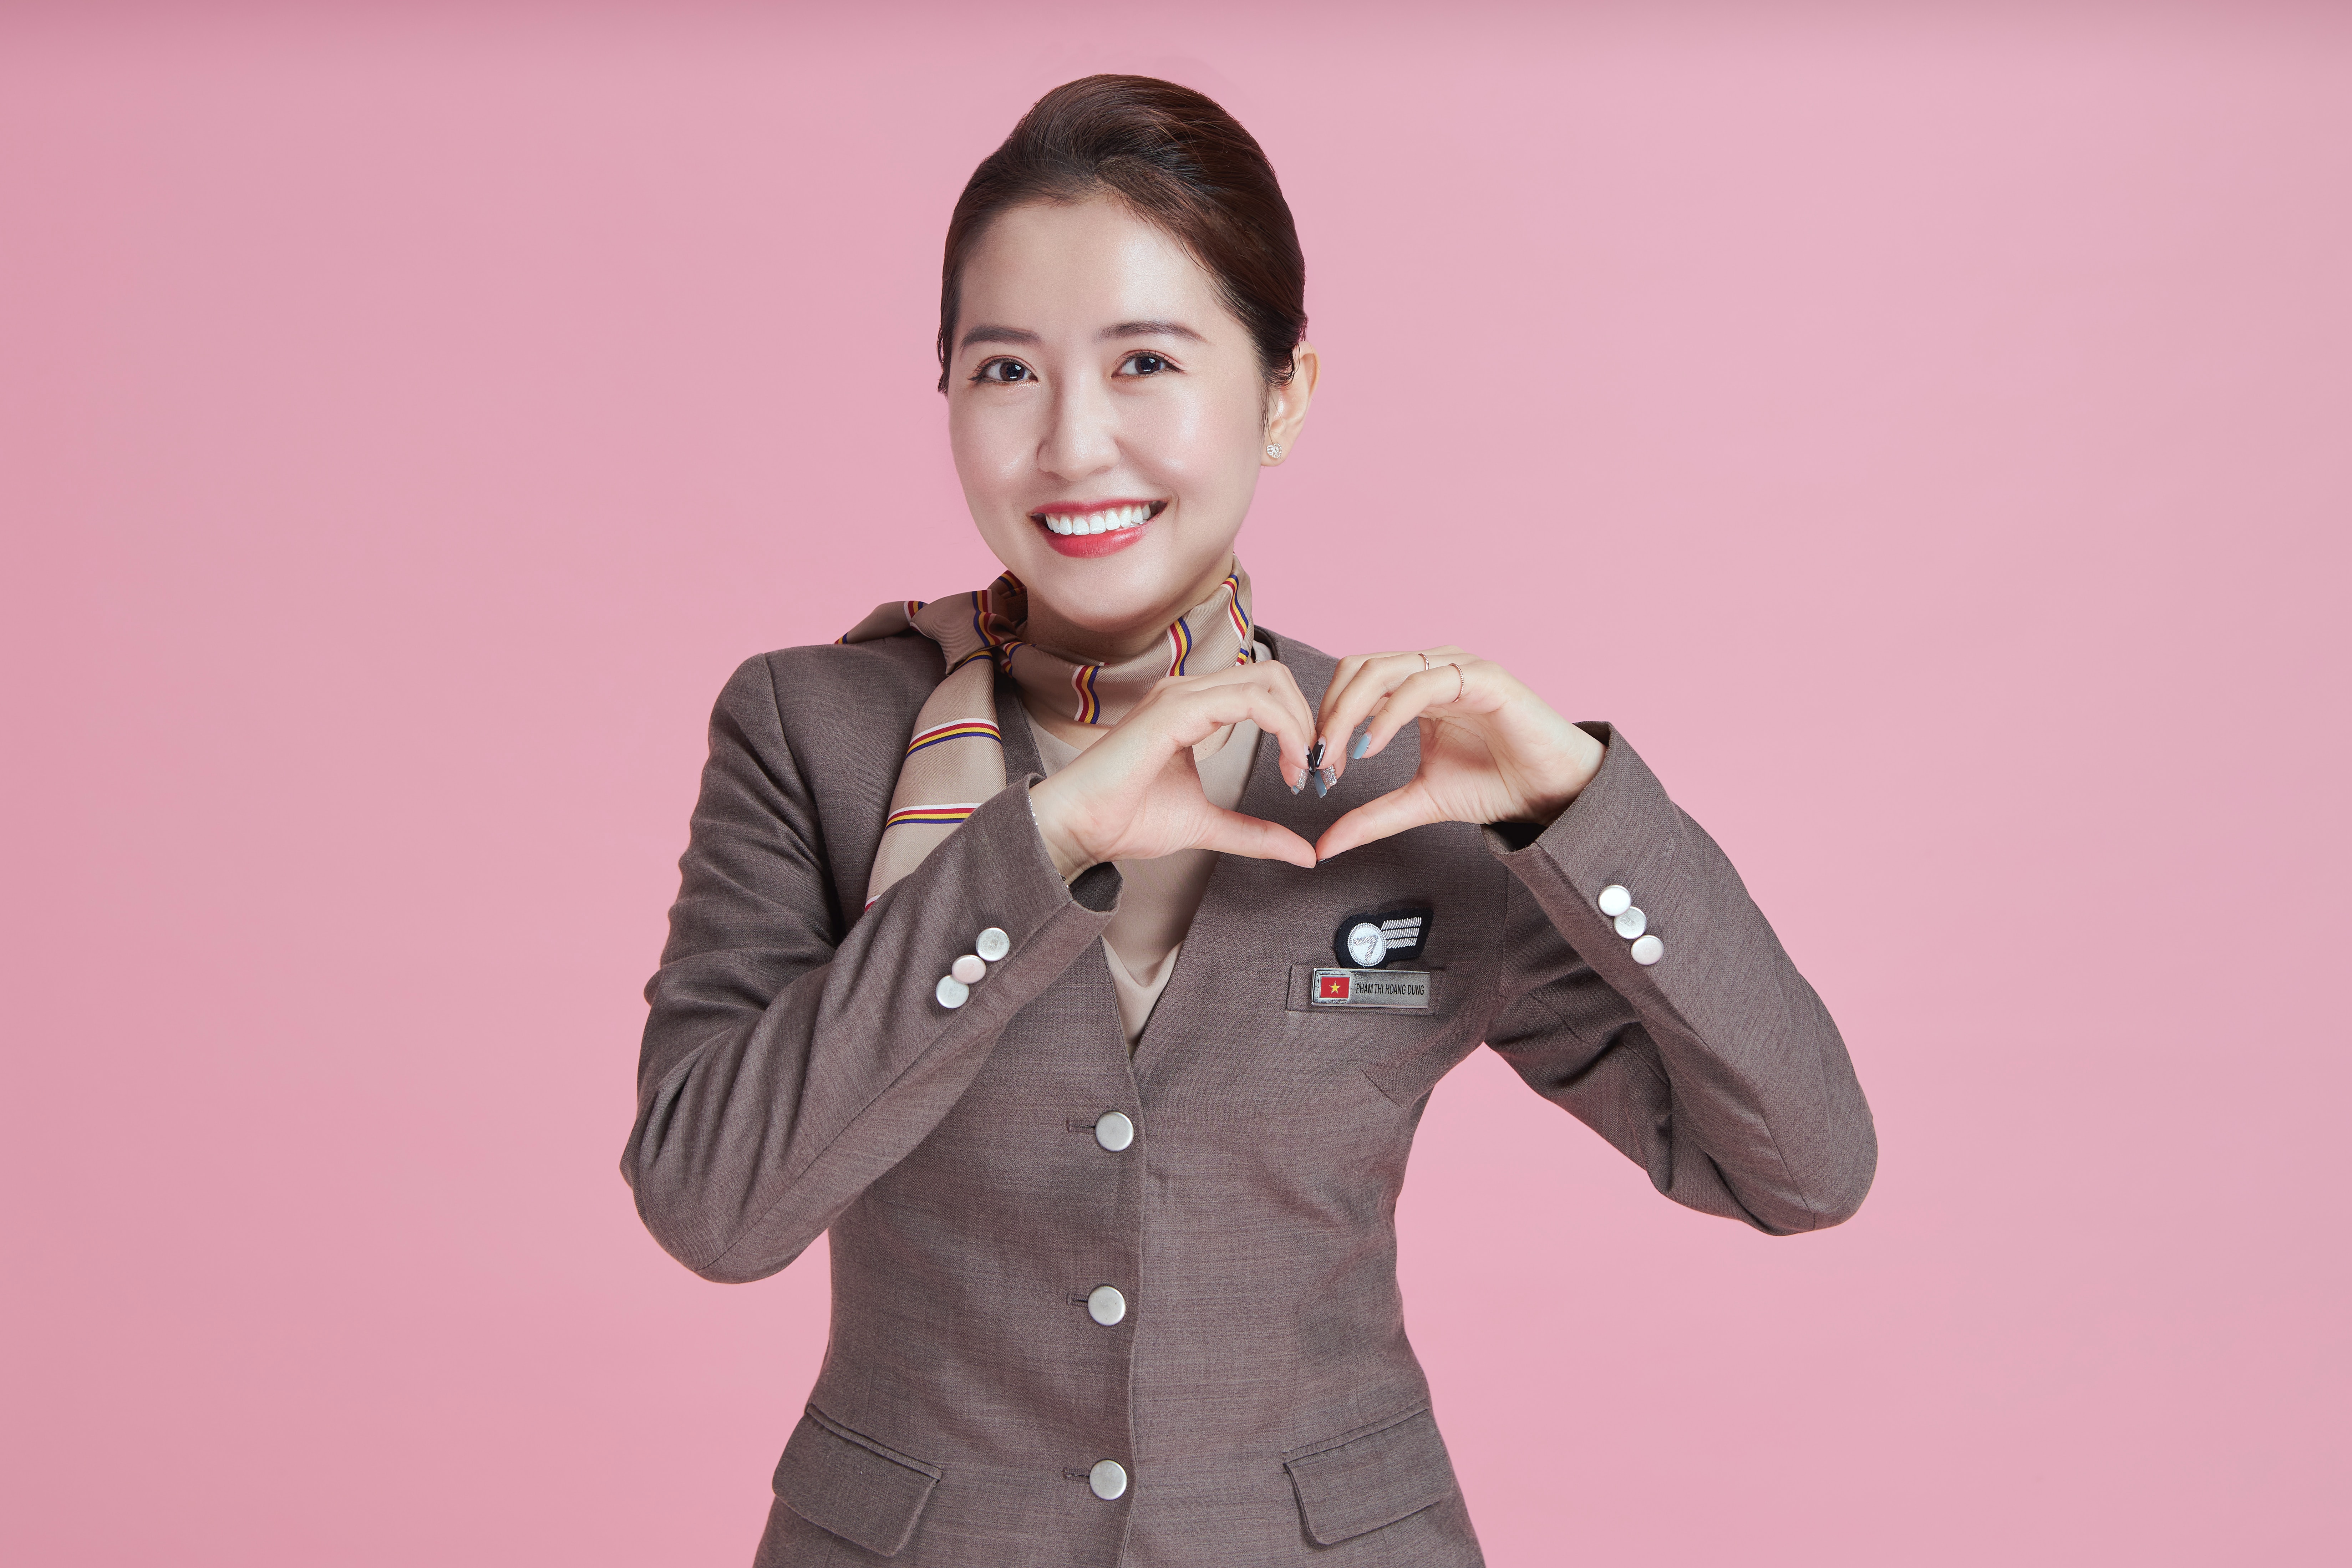 female airline hostess doing love heart emote